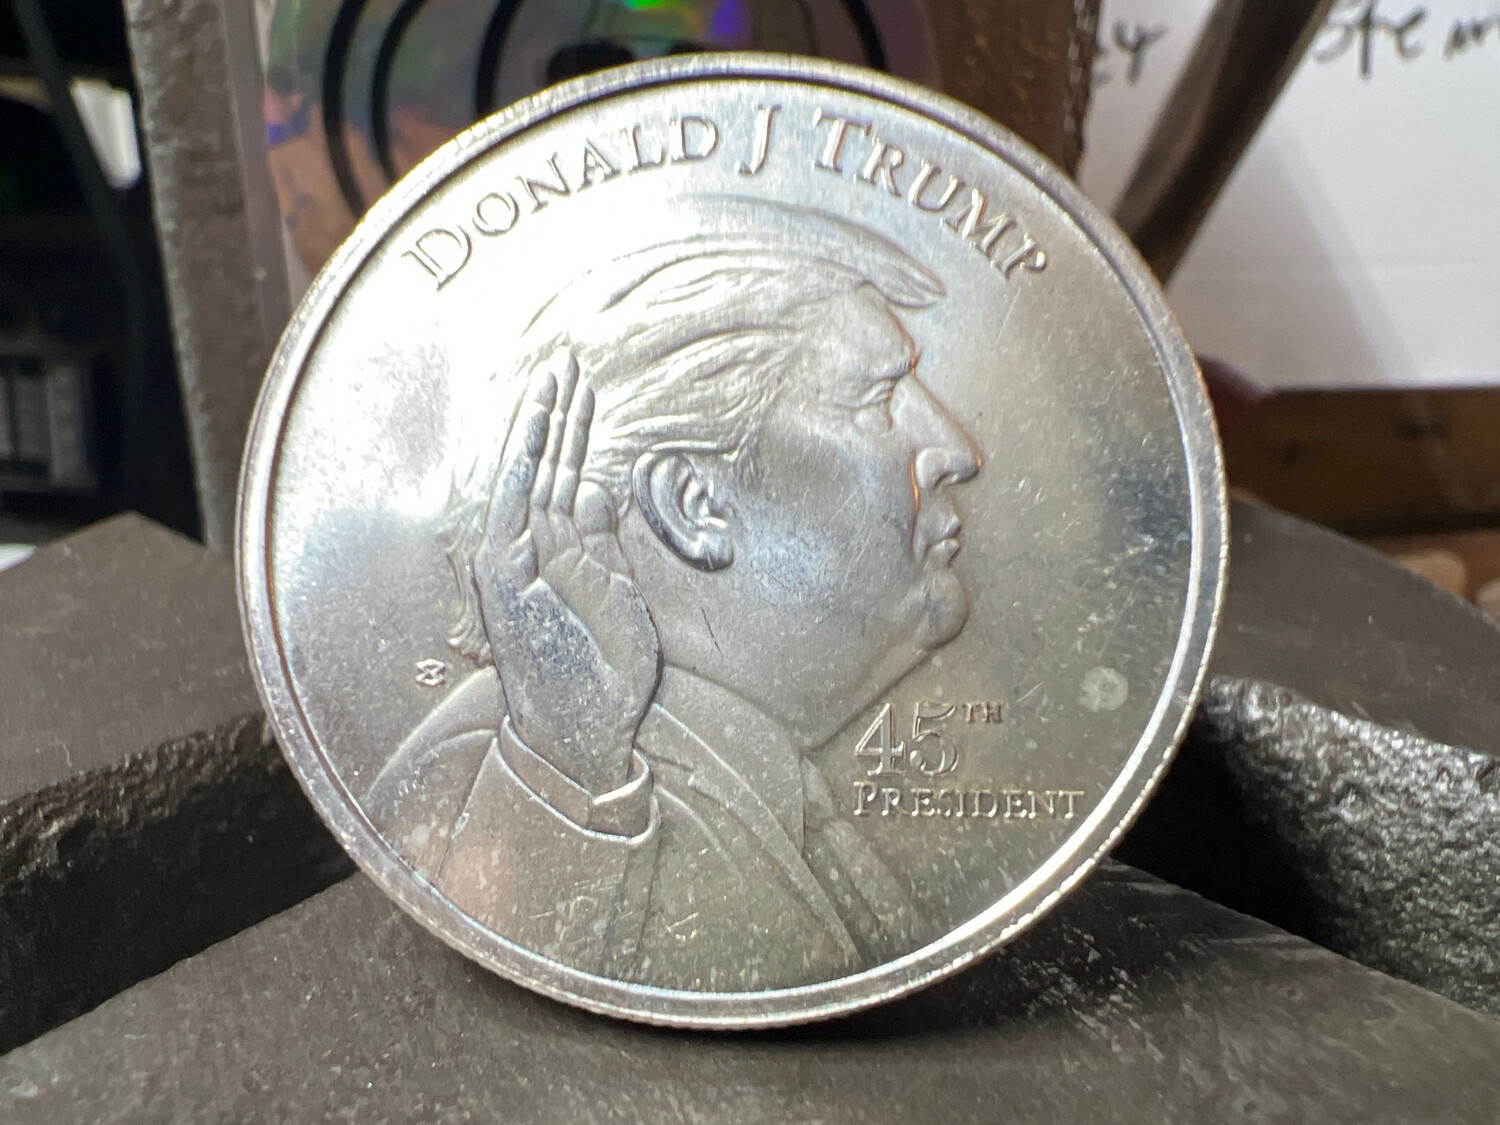 Donald Trump Fine Silver Coin Ring